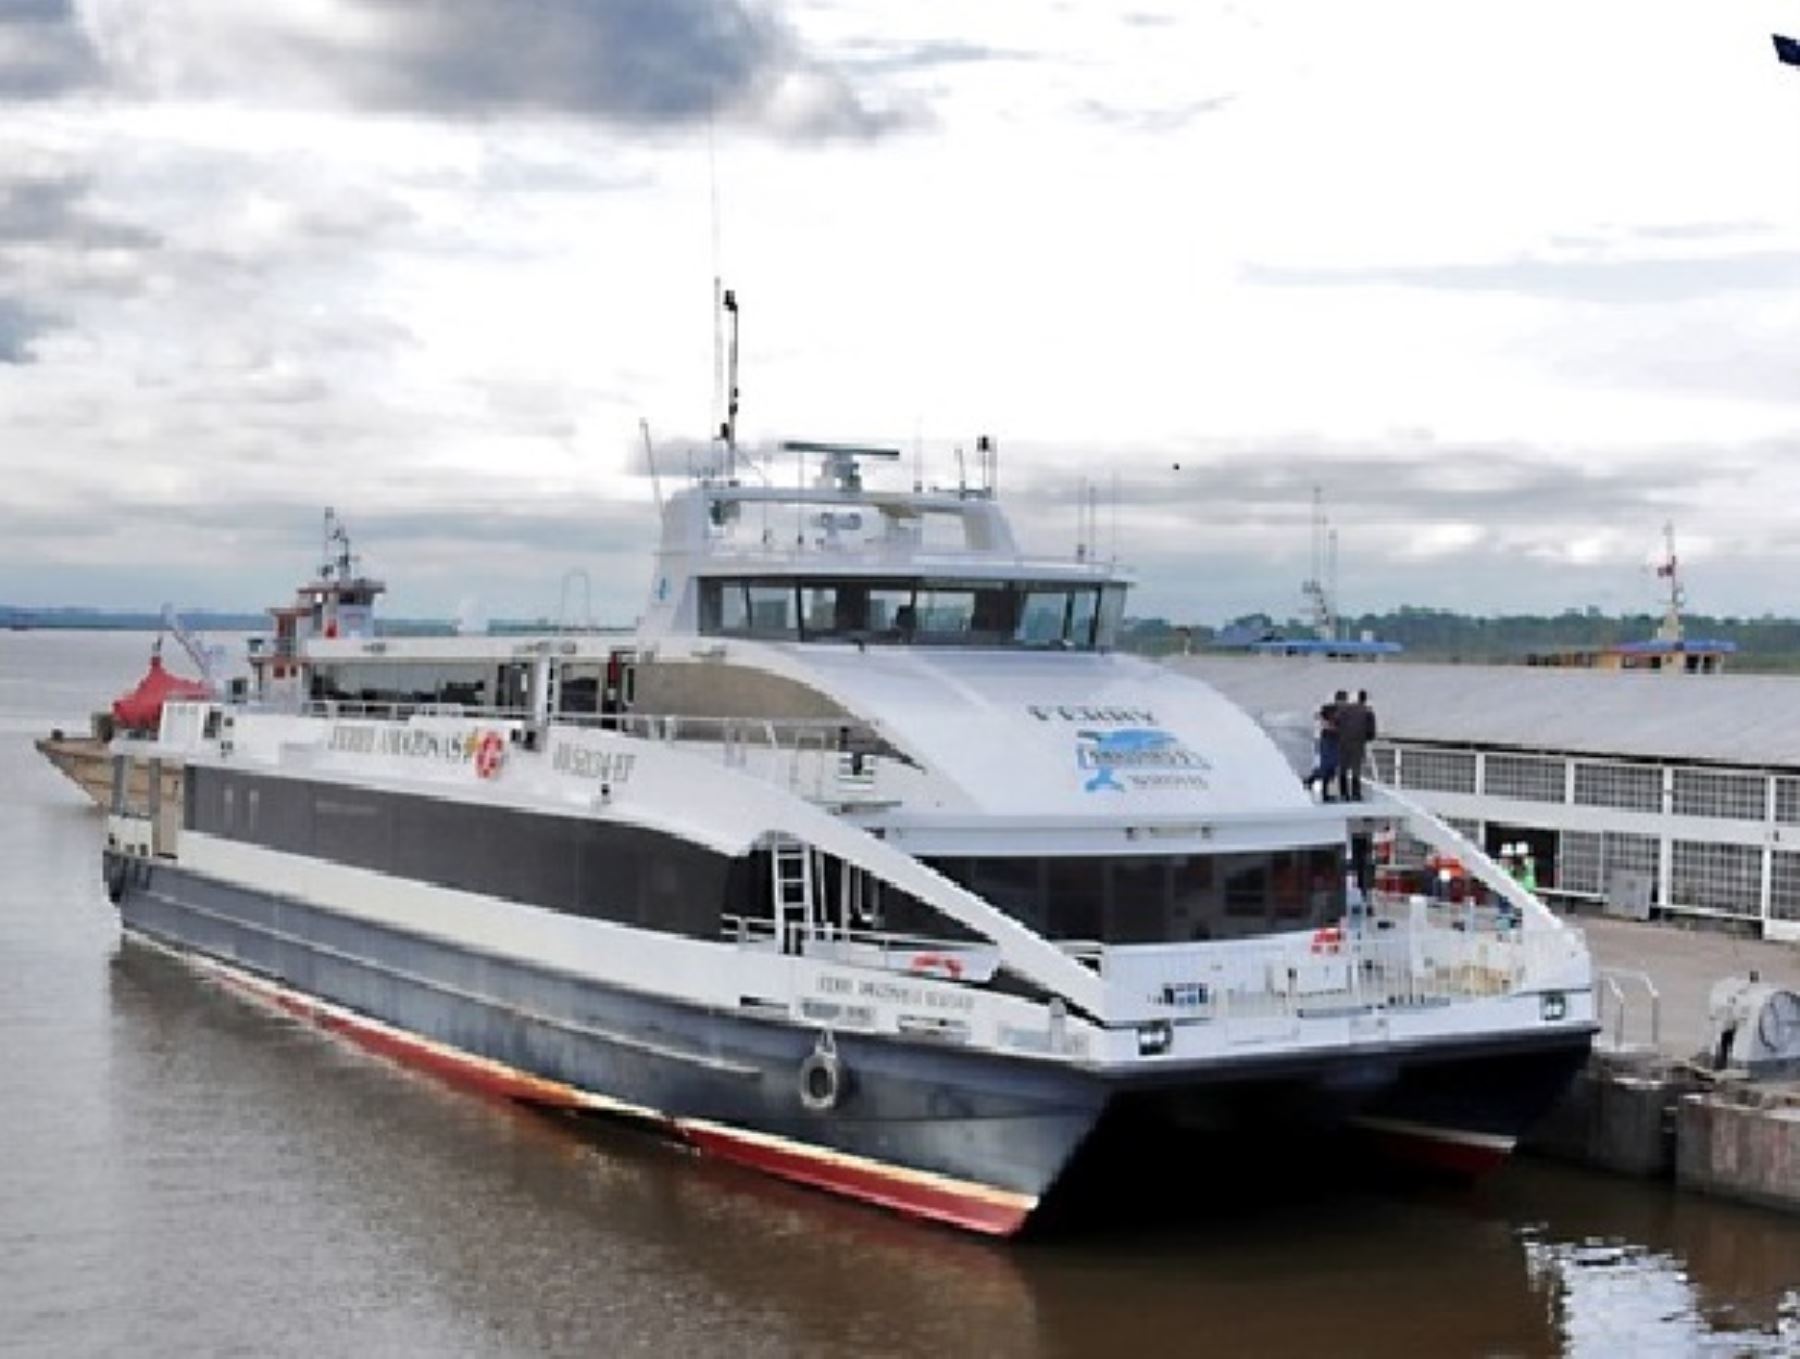 El MTC inició una campaña de sensibilización sobre seguridad portuaria y fluvial en la Amazonía peruana, en especial en las ciudades de Iquitos, Pucallpa y Yurimaguas.Foto: ANDINA/Difusión.